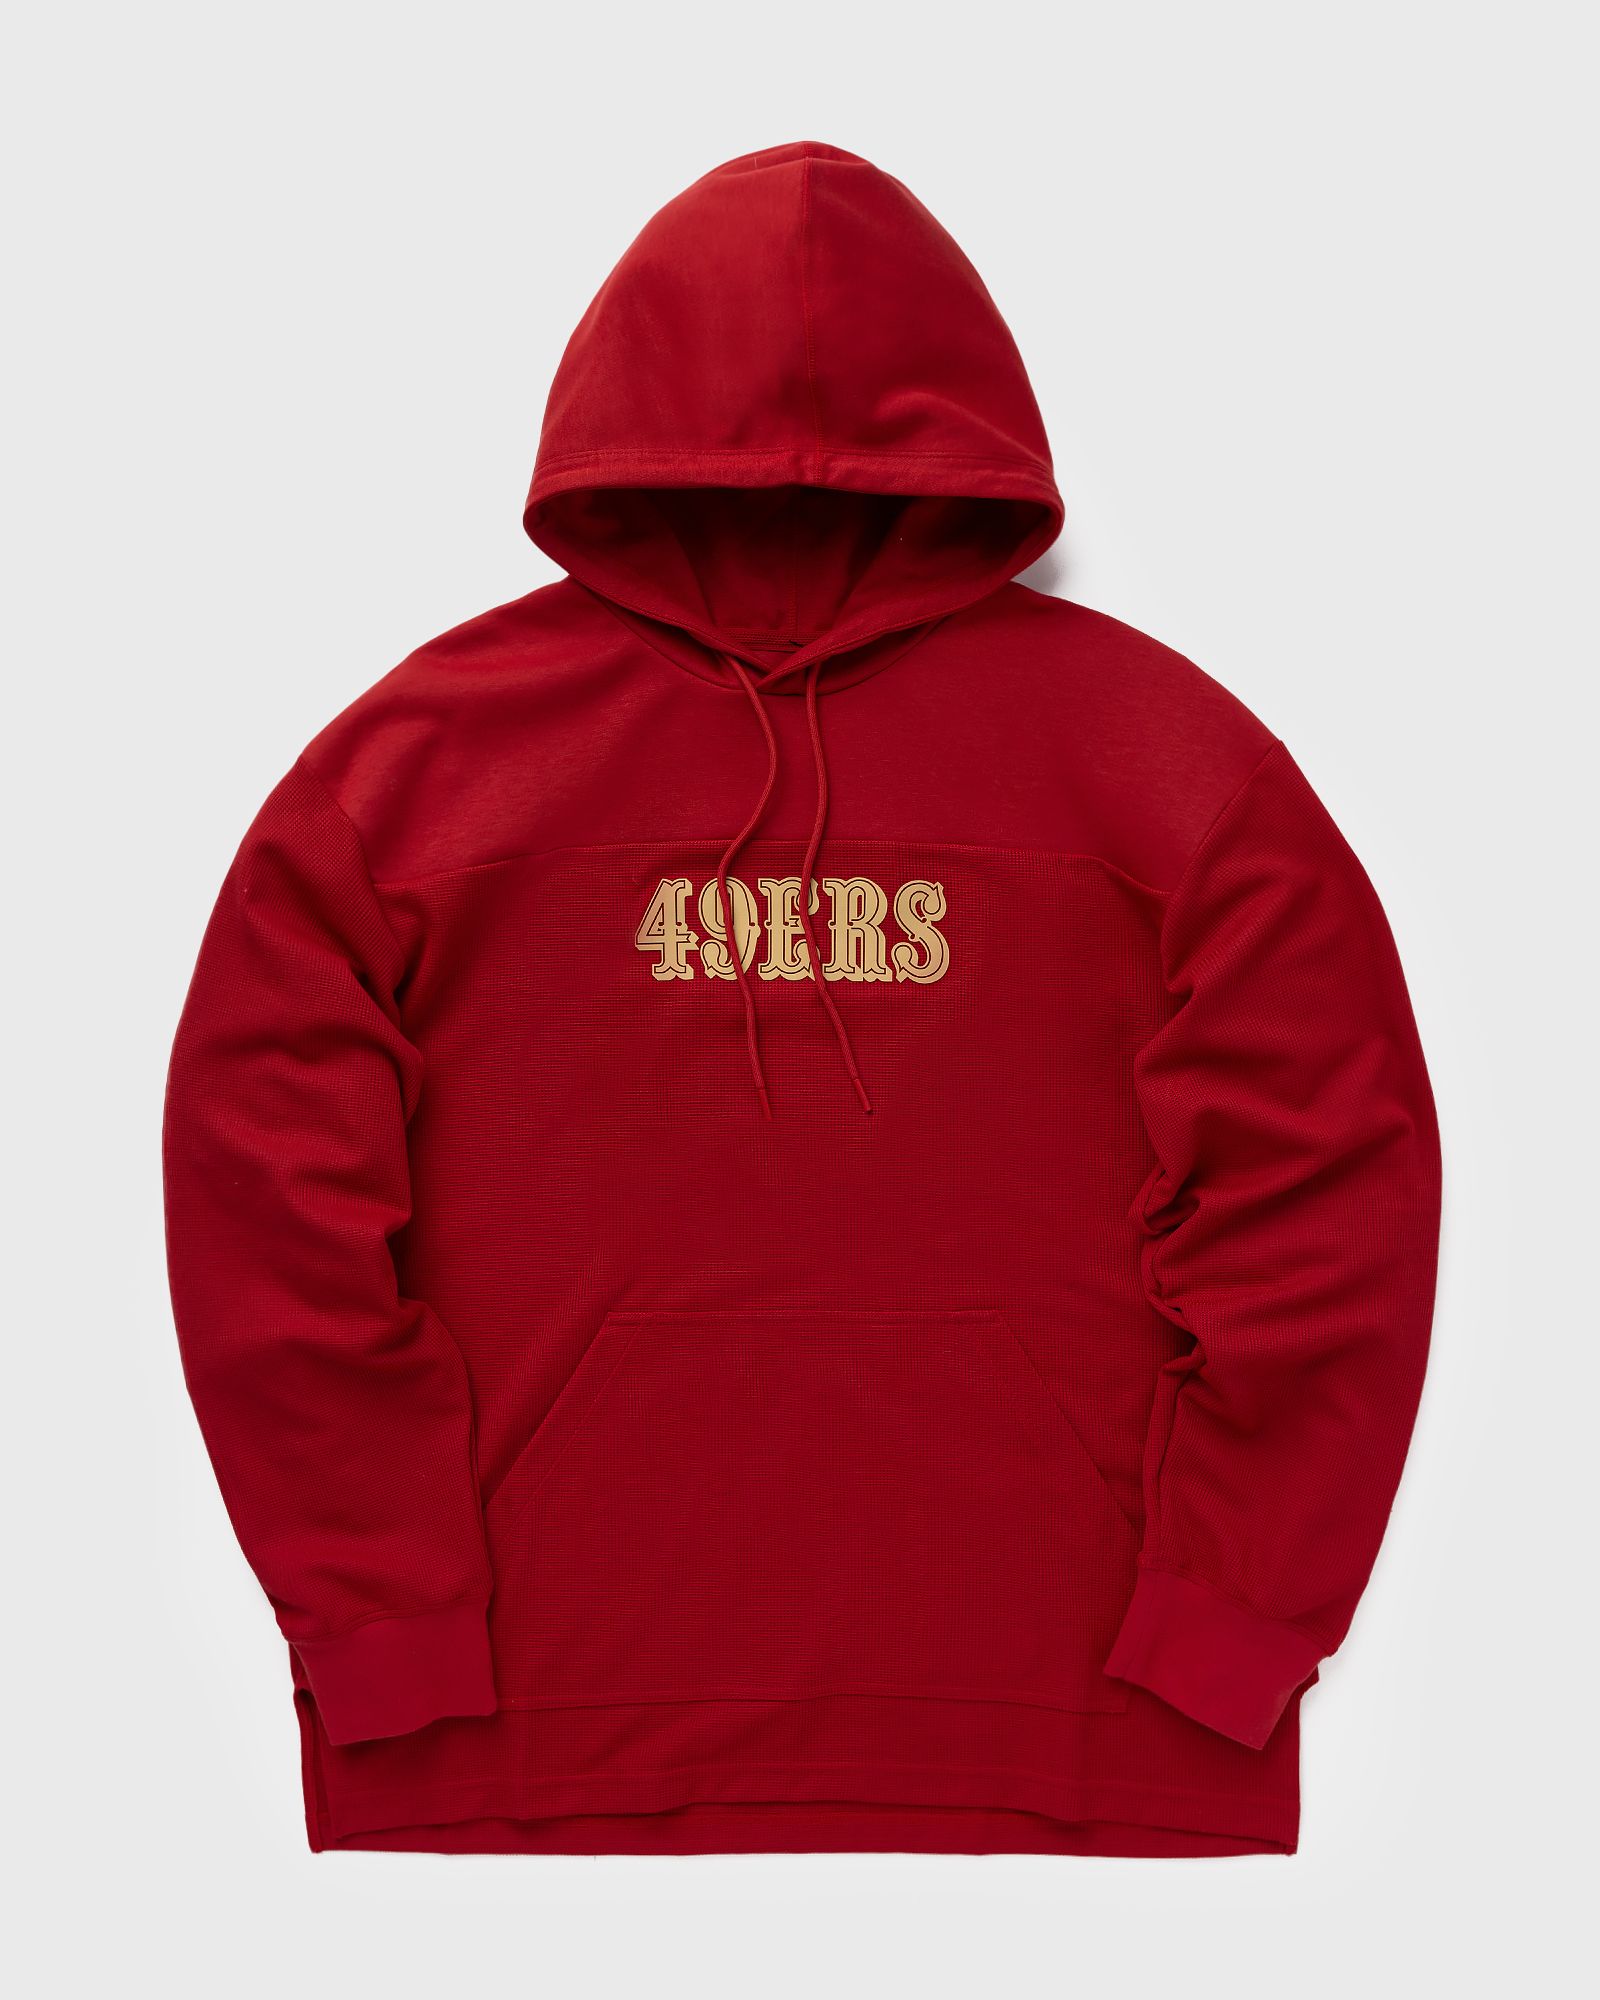 Nike - nfl san francisco 49ers  jersey hoodie top men hoodies red in größe:xl